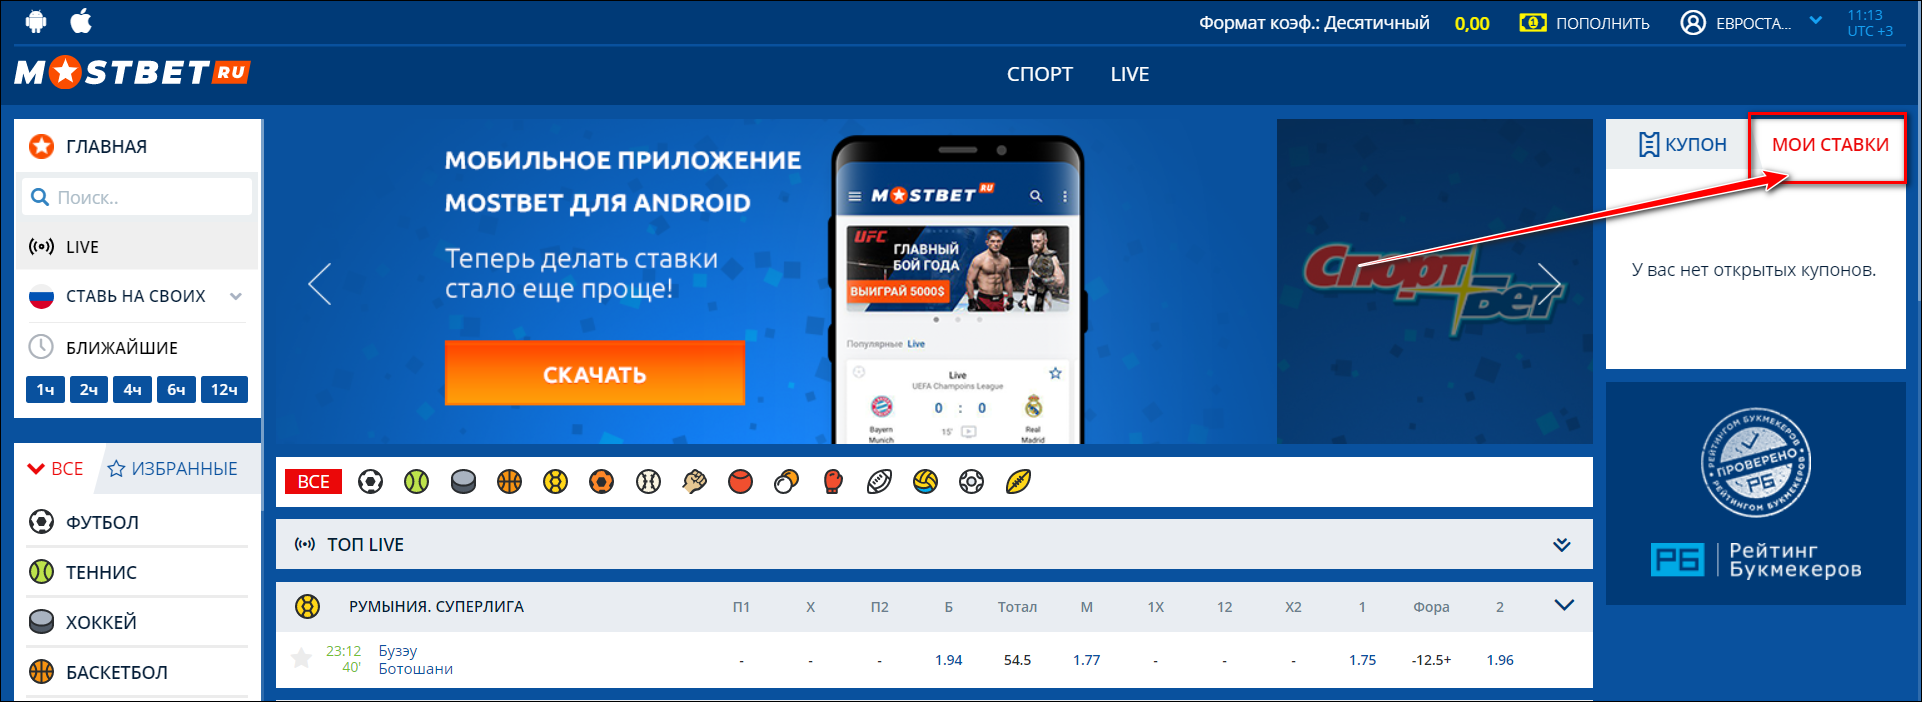 Мостбет зеркало сегодня mostbet 666 ru бездепозитные бонусы казино риобет ставки на спорт